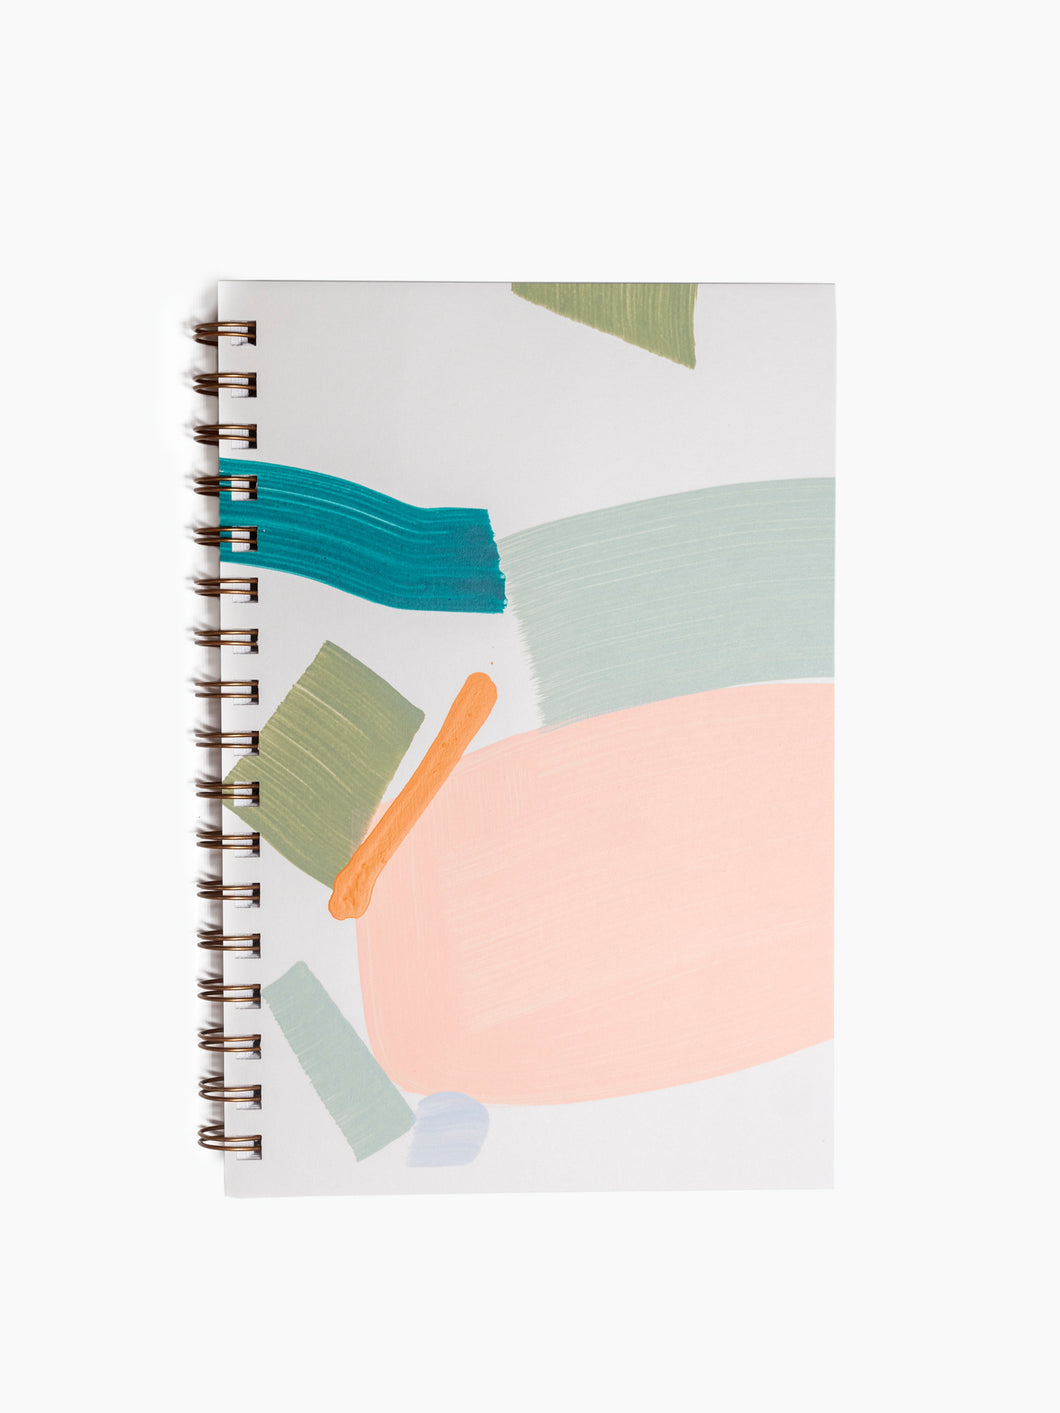 Playa Painted Notebook